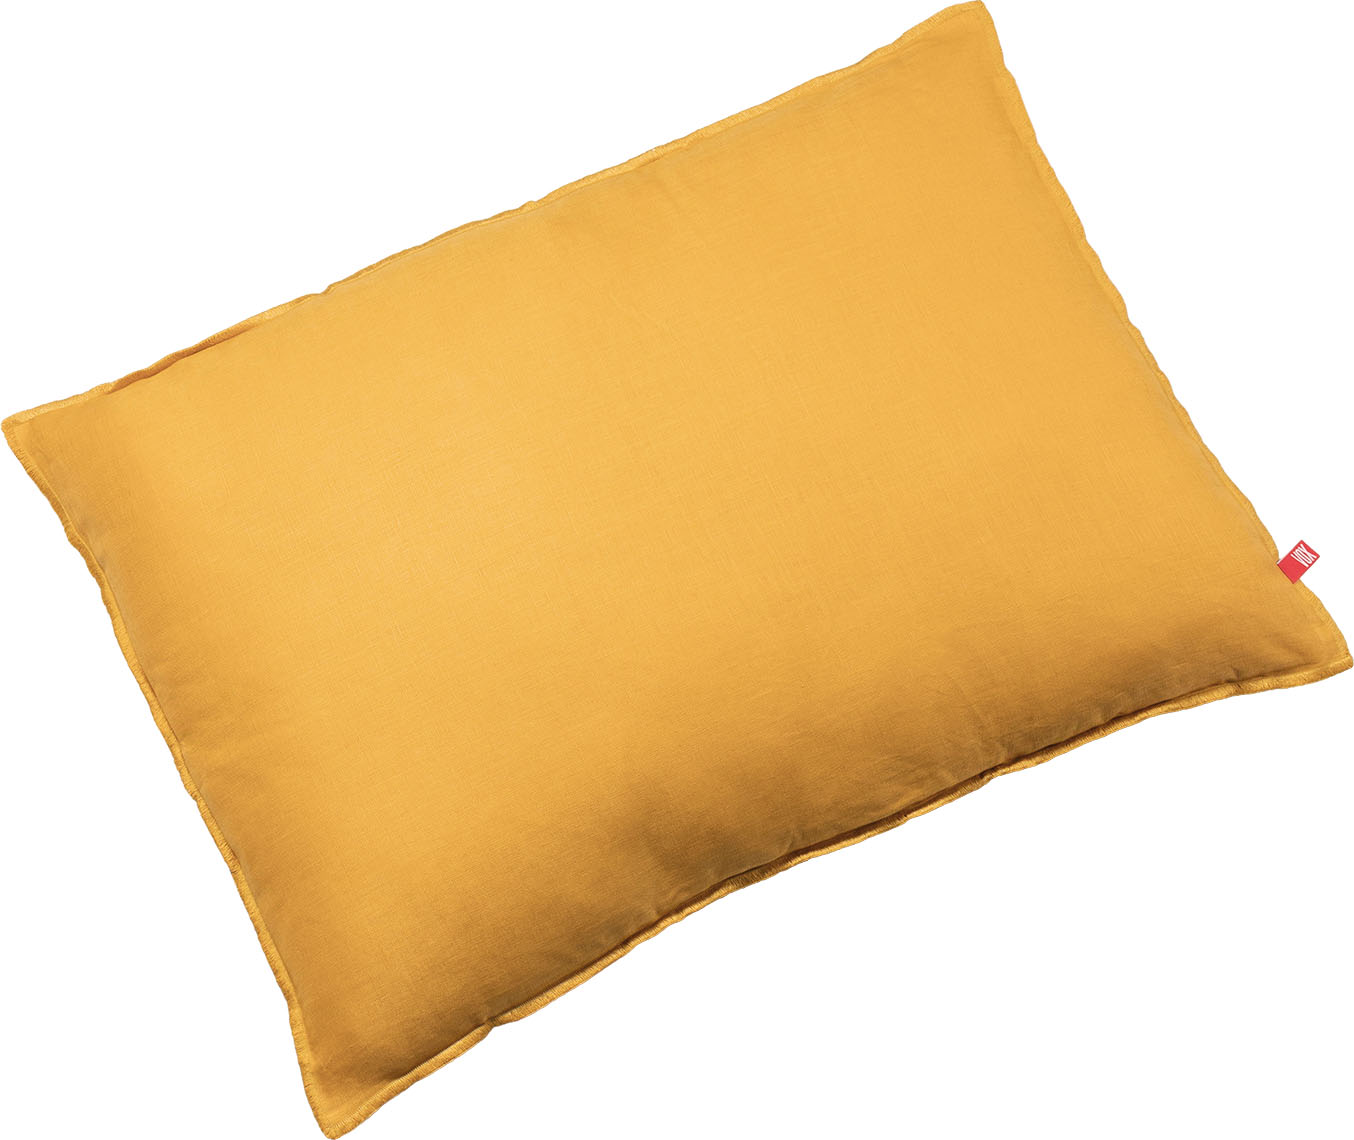 Pillow Linen rectangular